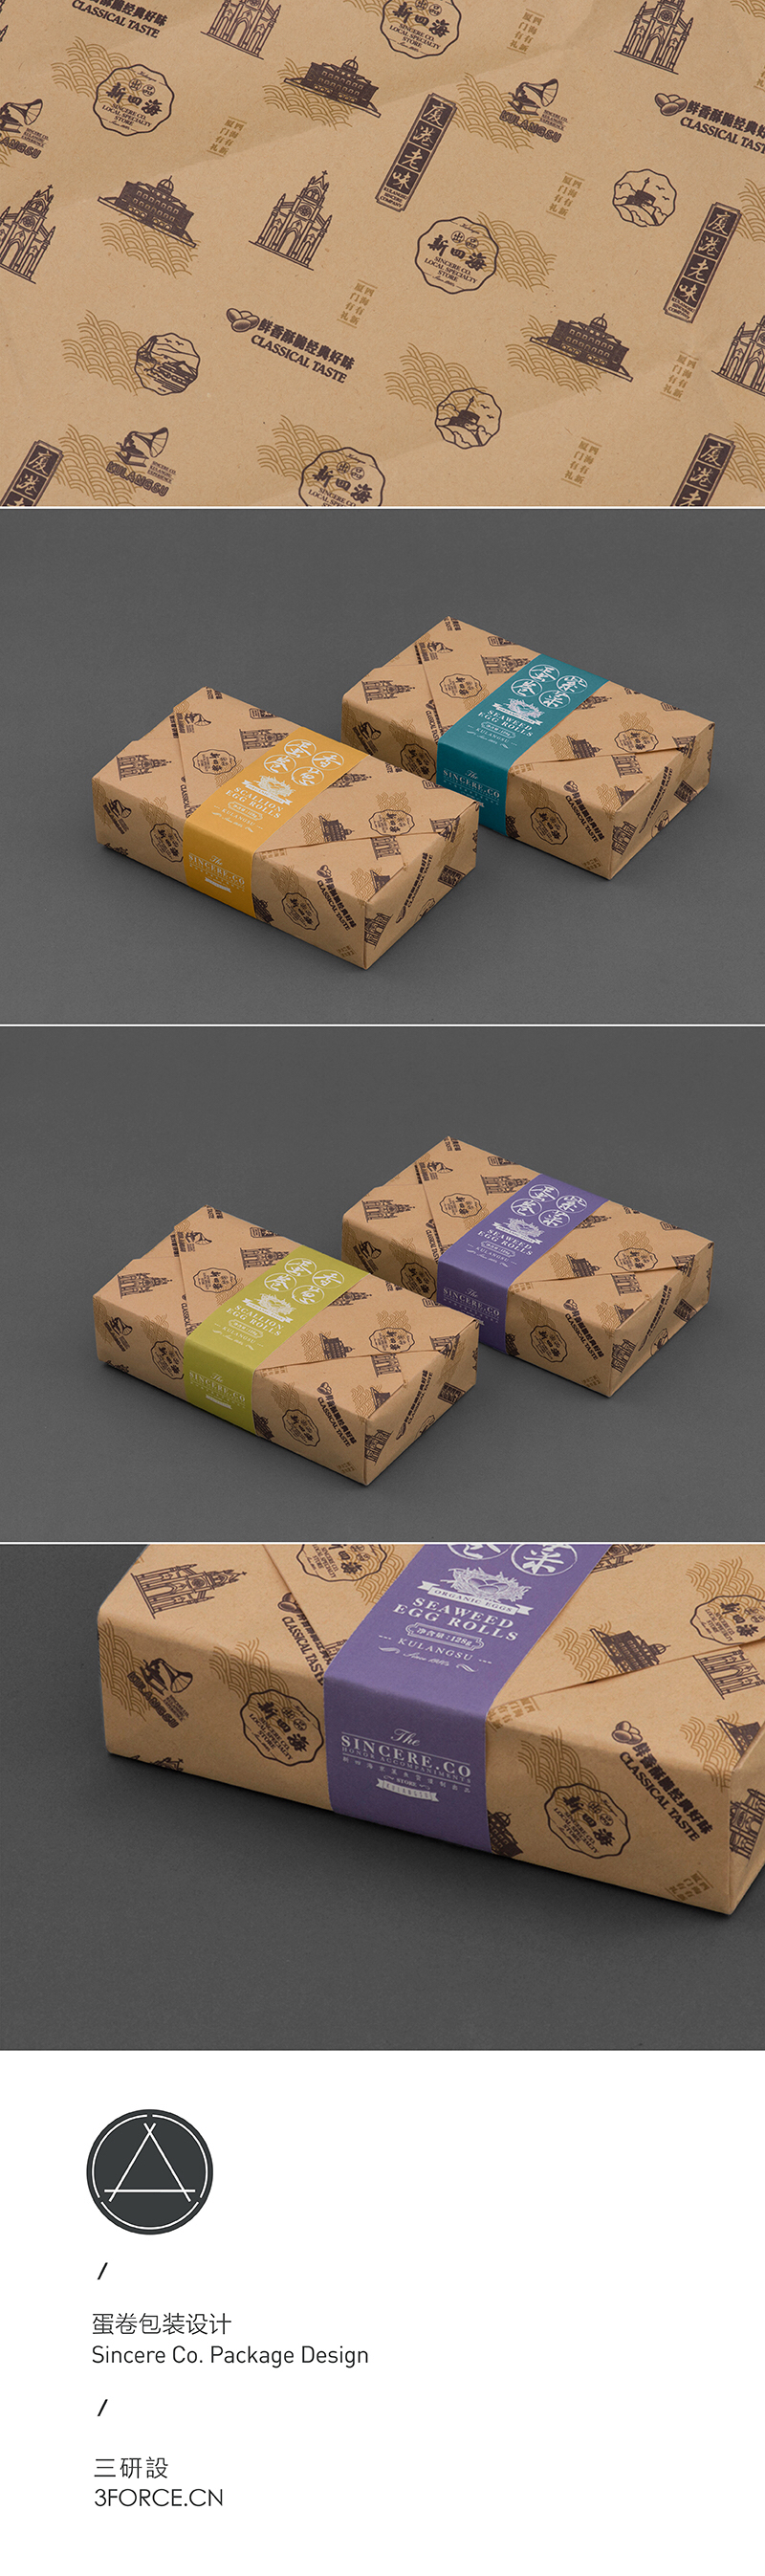 Food  packaging design 包装